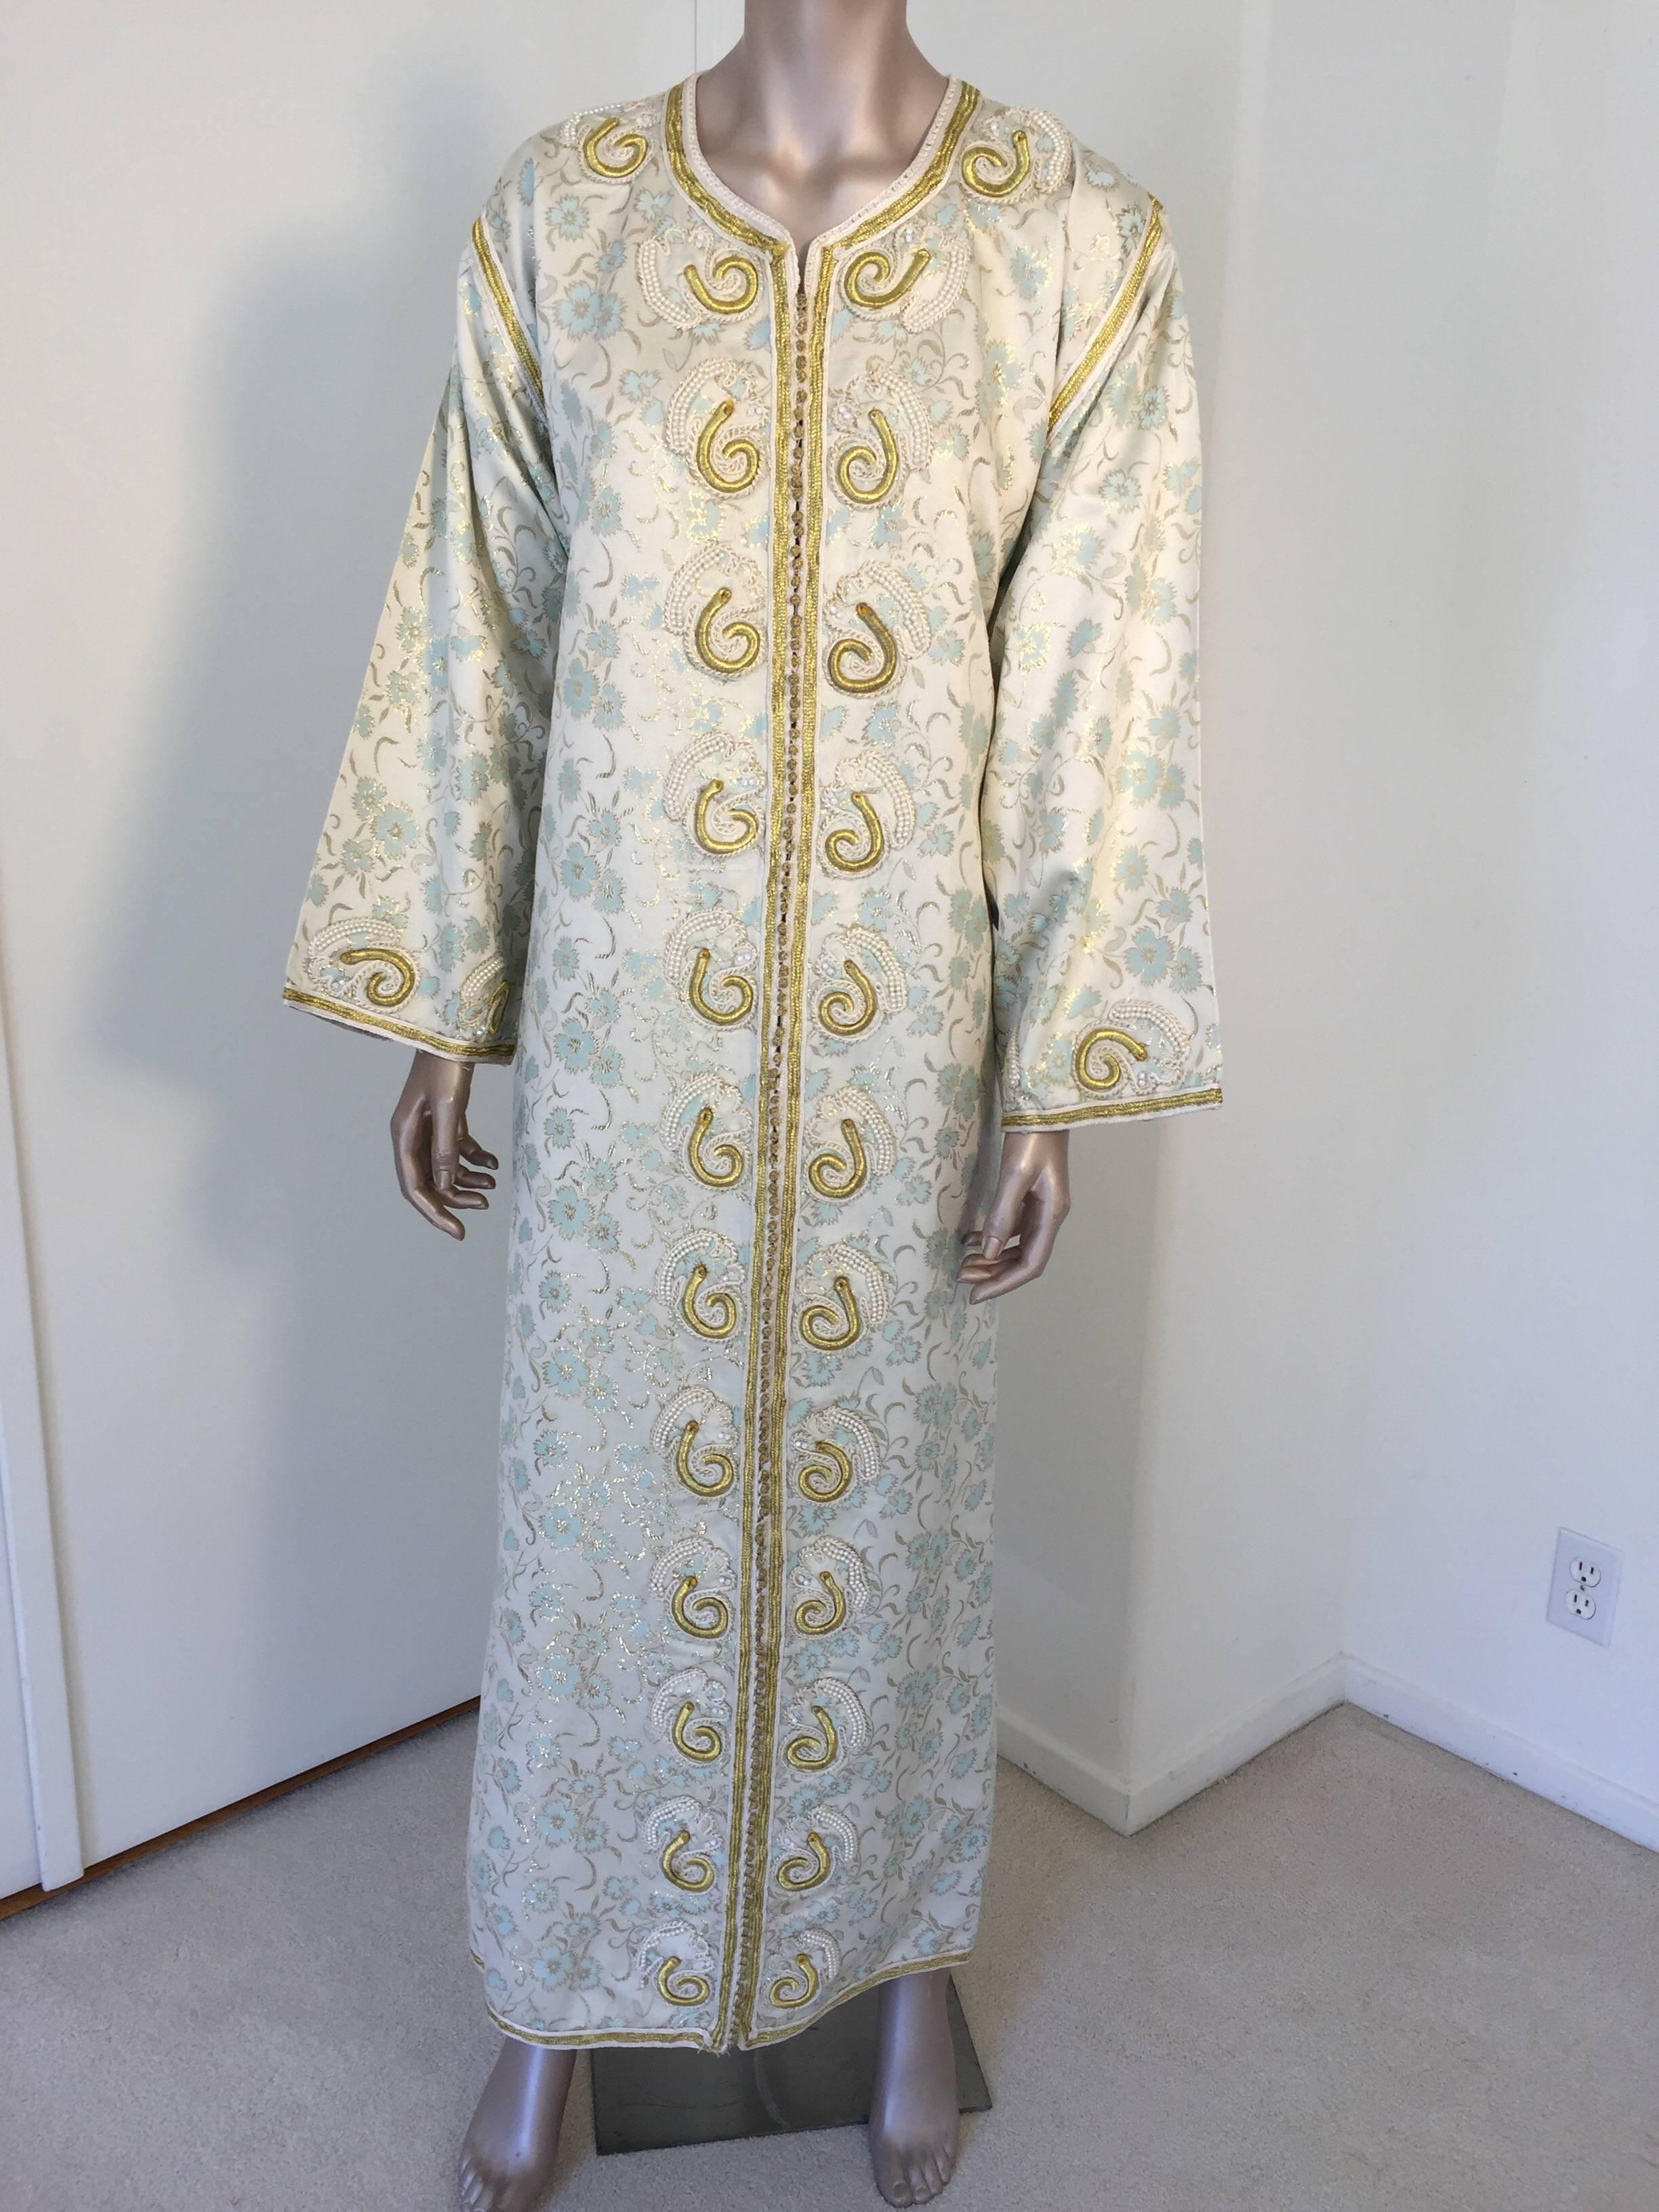 Elegant kaftan marocain vintage en brocart blanc, brodé de fils d'or turcs. 
Cette robe longue chic en brocart floral blanc, or et bleu turquoise est brodée et embellie de motifs métalliques en fil d'or et de perles. 
Robe de soirée marocaine du